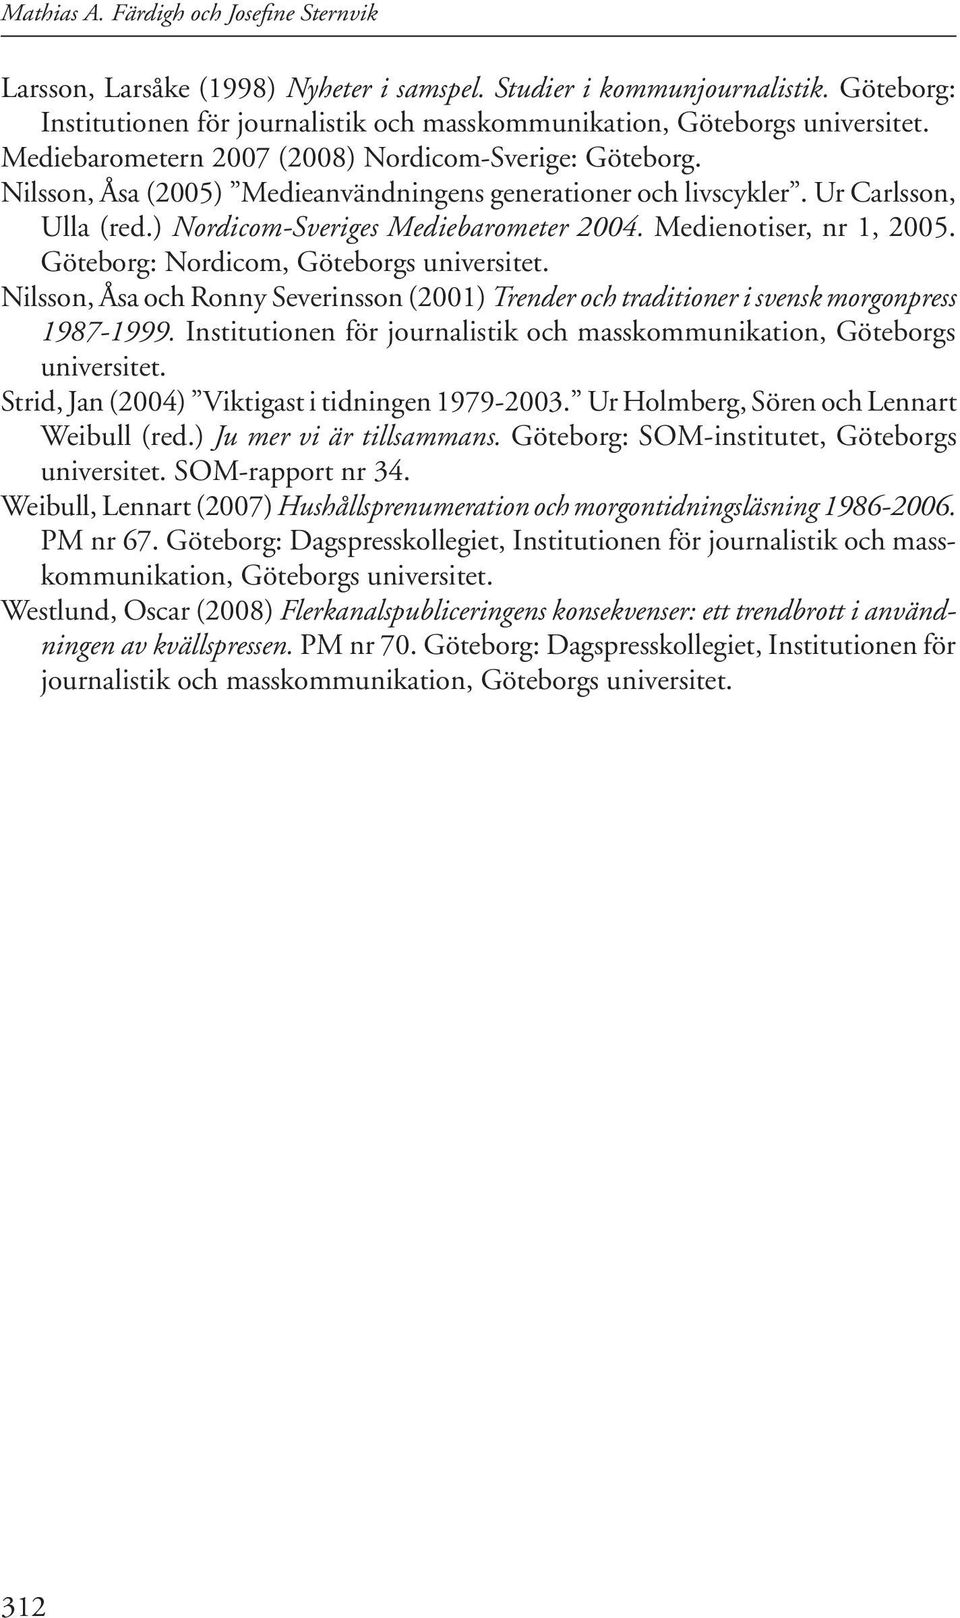 Medienotiser, nr 1, 05. Göteborg: Nordicom, Göteborgs universitet. Nilsson, Åsa och Ronny Severinsson (01) Trender och traditioner i svensk morgonpress 1987-1999.